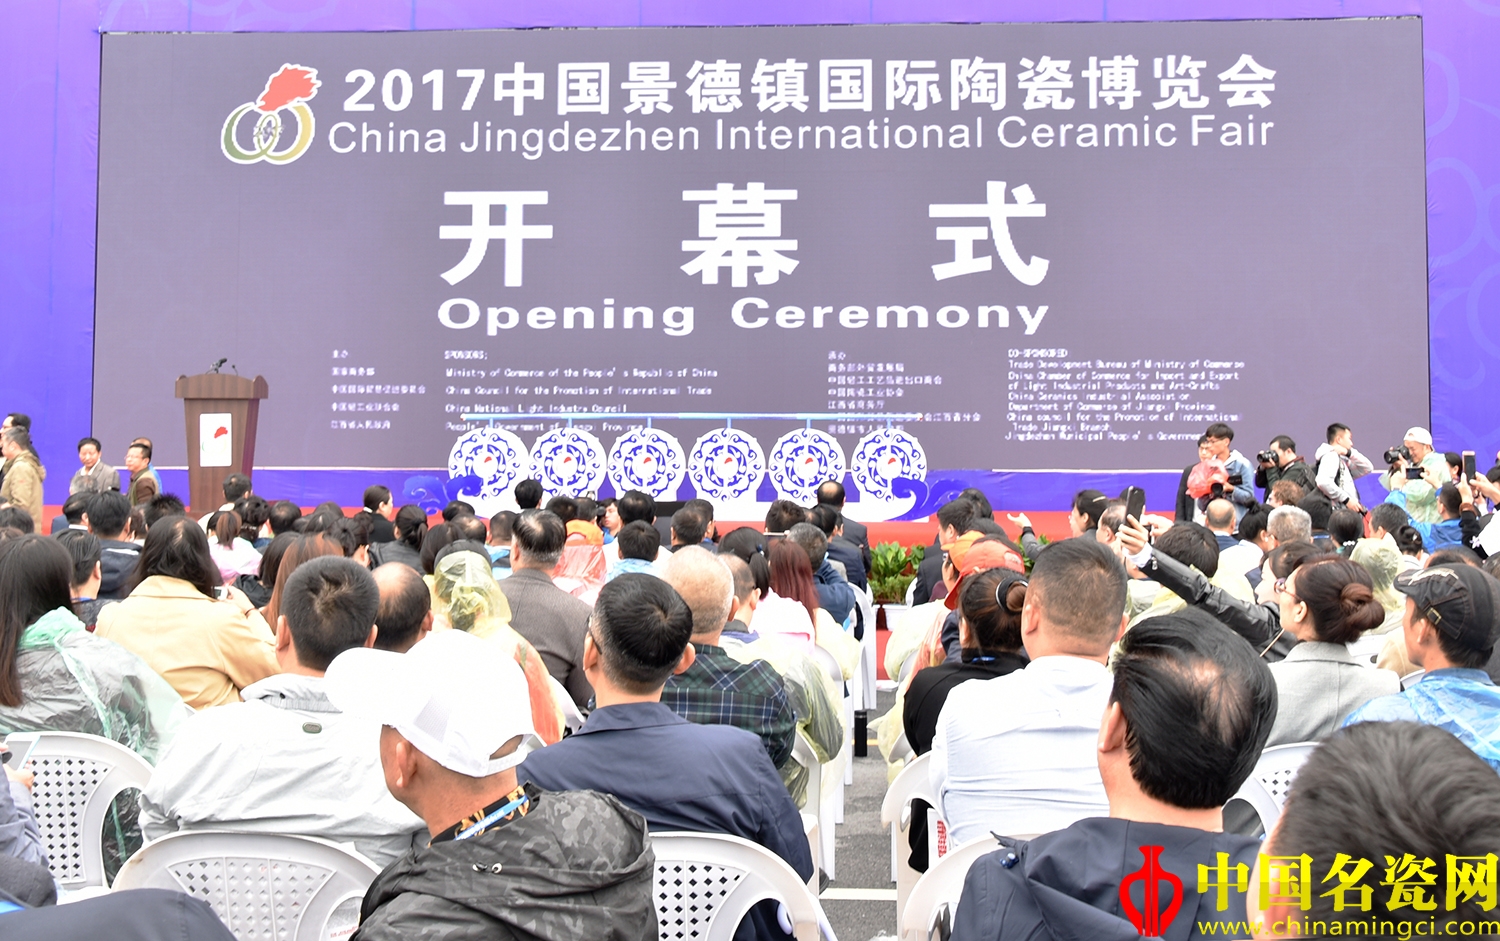 2017中国景德镇国际陶瓷博览会